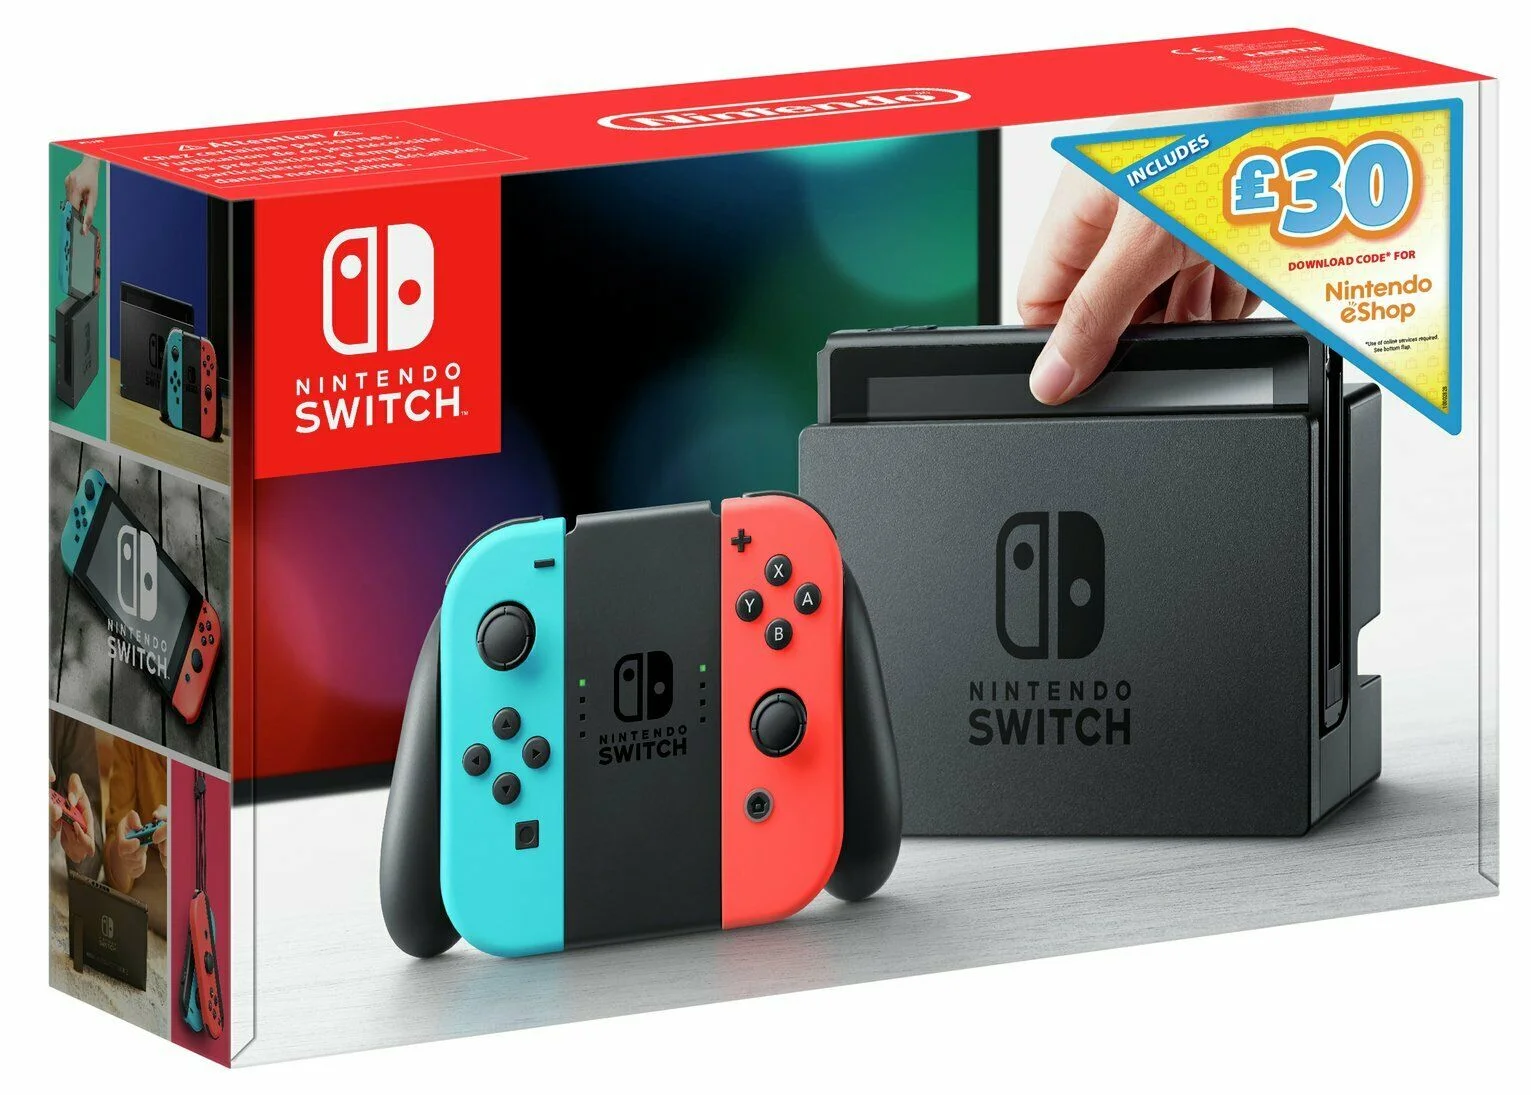  Nintendo Switch £30 eShop Voucher Bundle